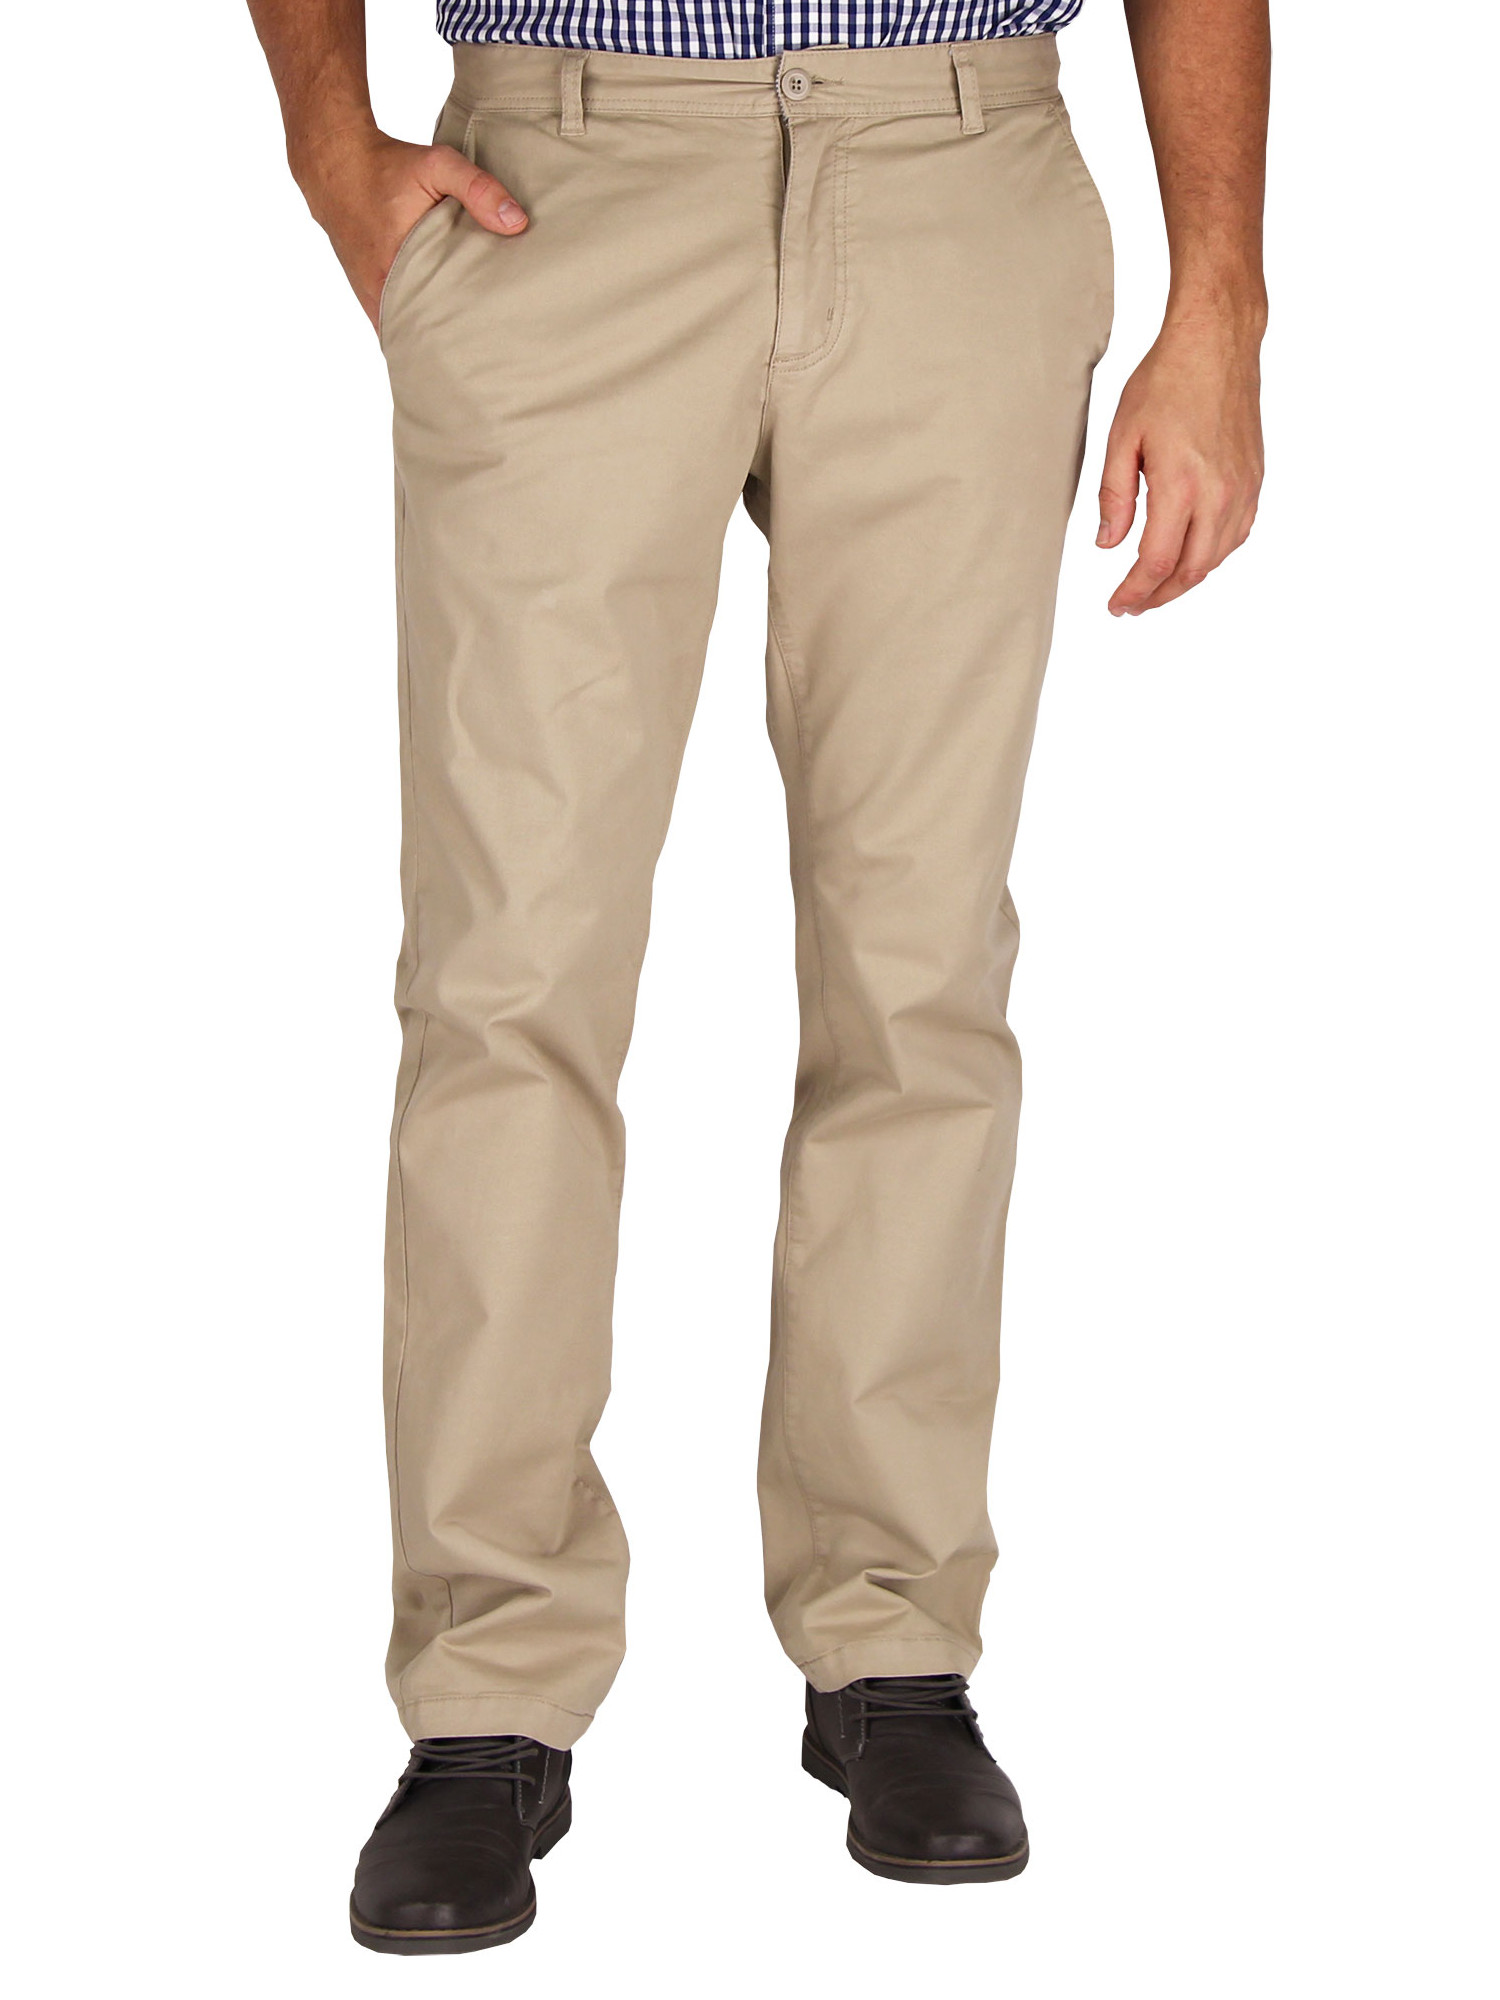 Pantalon décontracté pour homme, moderne, stretch, devant plat (Kaki clair, Taille 34W x 32L) - Urban Boundaries